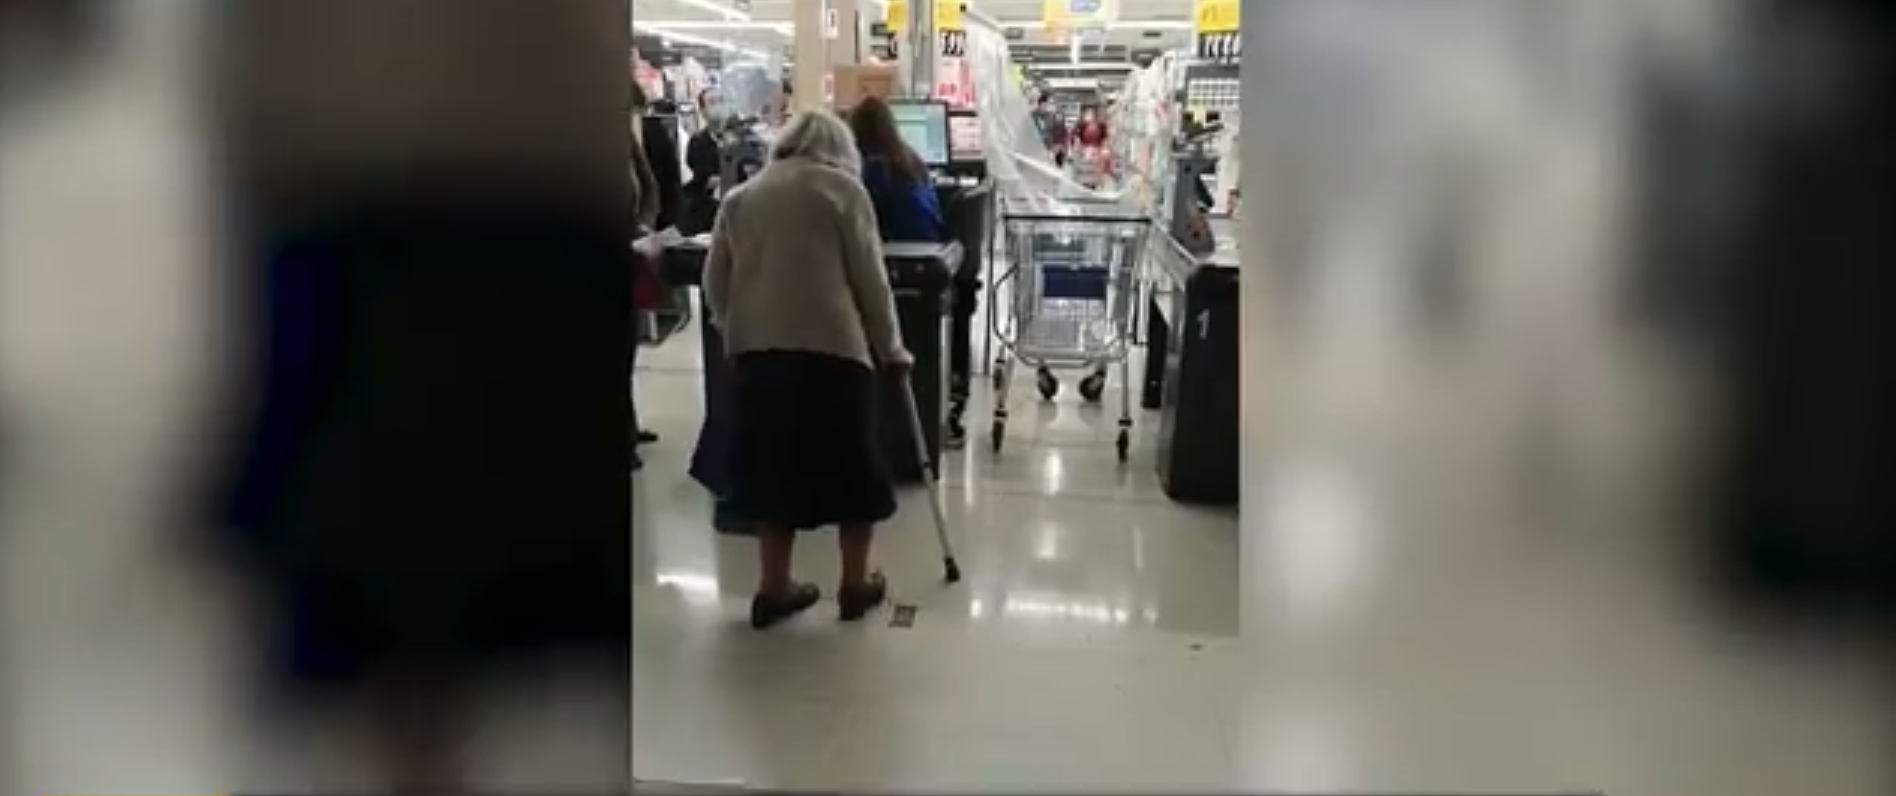 Expulsan a una mujer de 100 años del supermercado por no tener salvoconducto para salir de casa